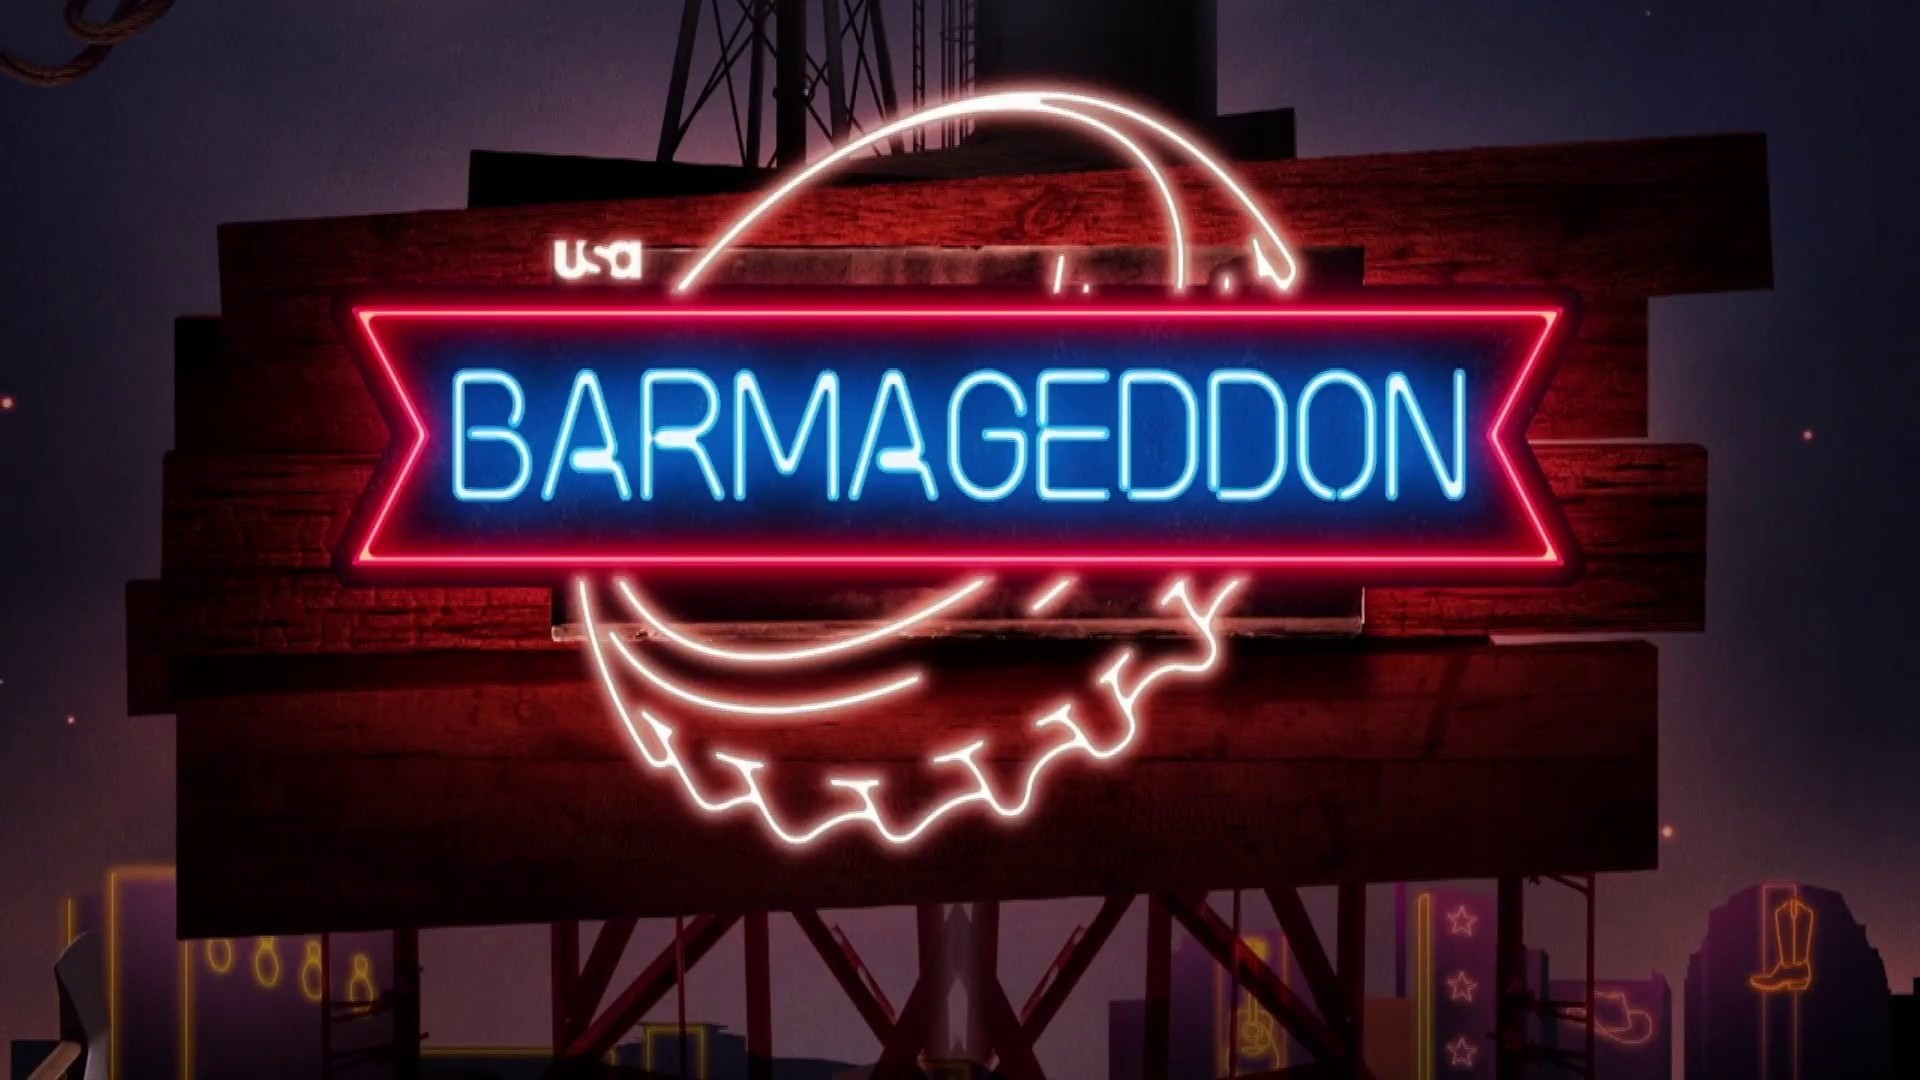 Barmageddon': Blake Shelton Searching For 'Greatest Barthletes